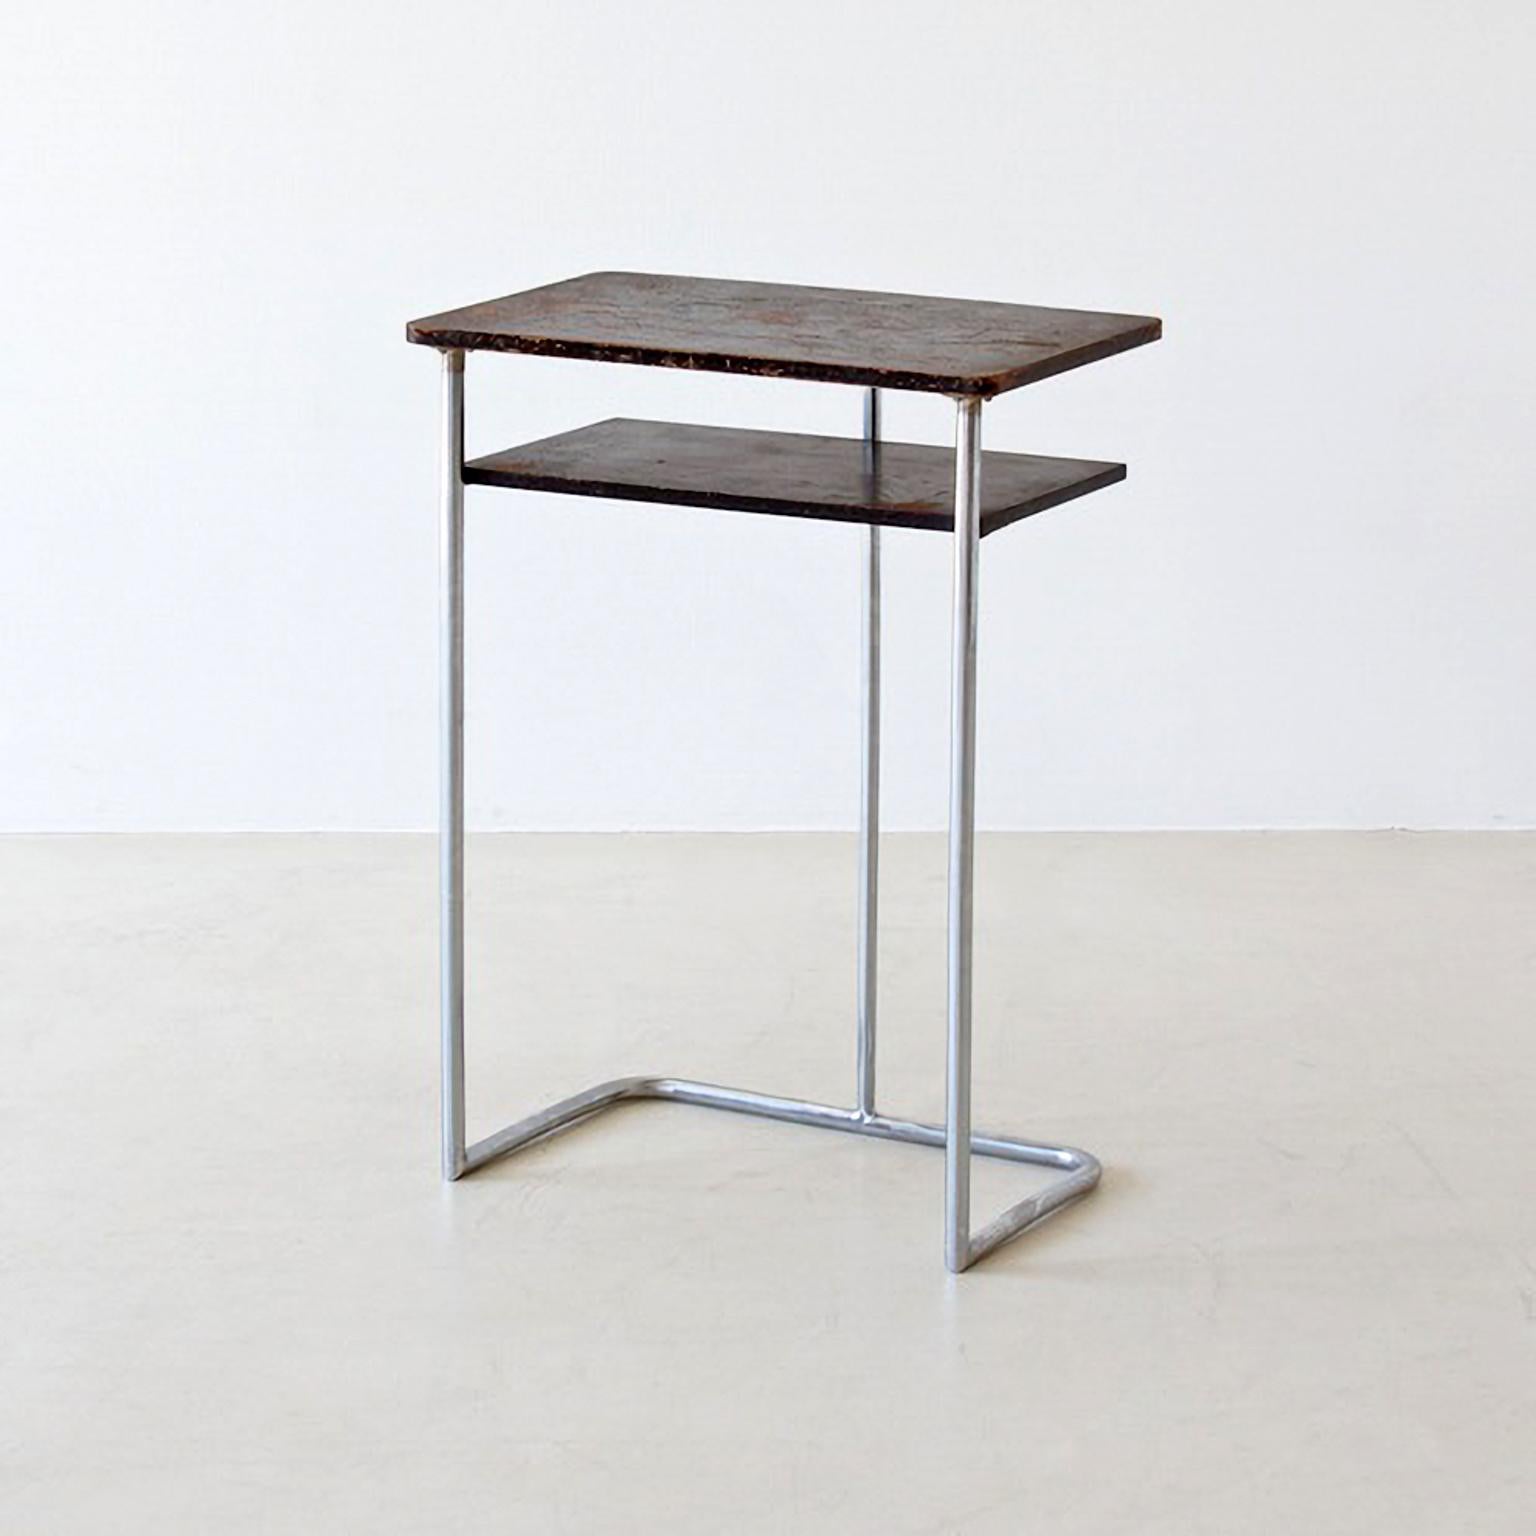 Kleiner modernistischer Schreibtisch aus verchromtem Stahlrohr und gebeiztem/furniertem/lackiertem Holz. Der Tisch kann individuell gestaltet werden und ist in verschiedenen Mengen erhältlich. Lieferfrist 10-12 Wochen.